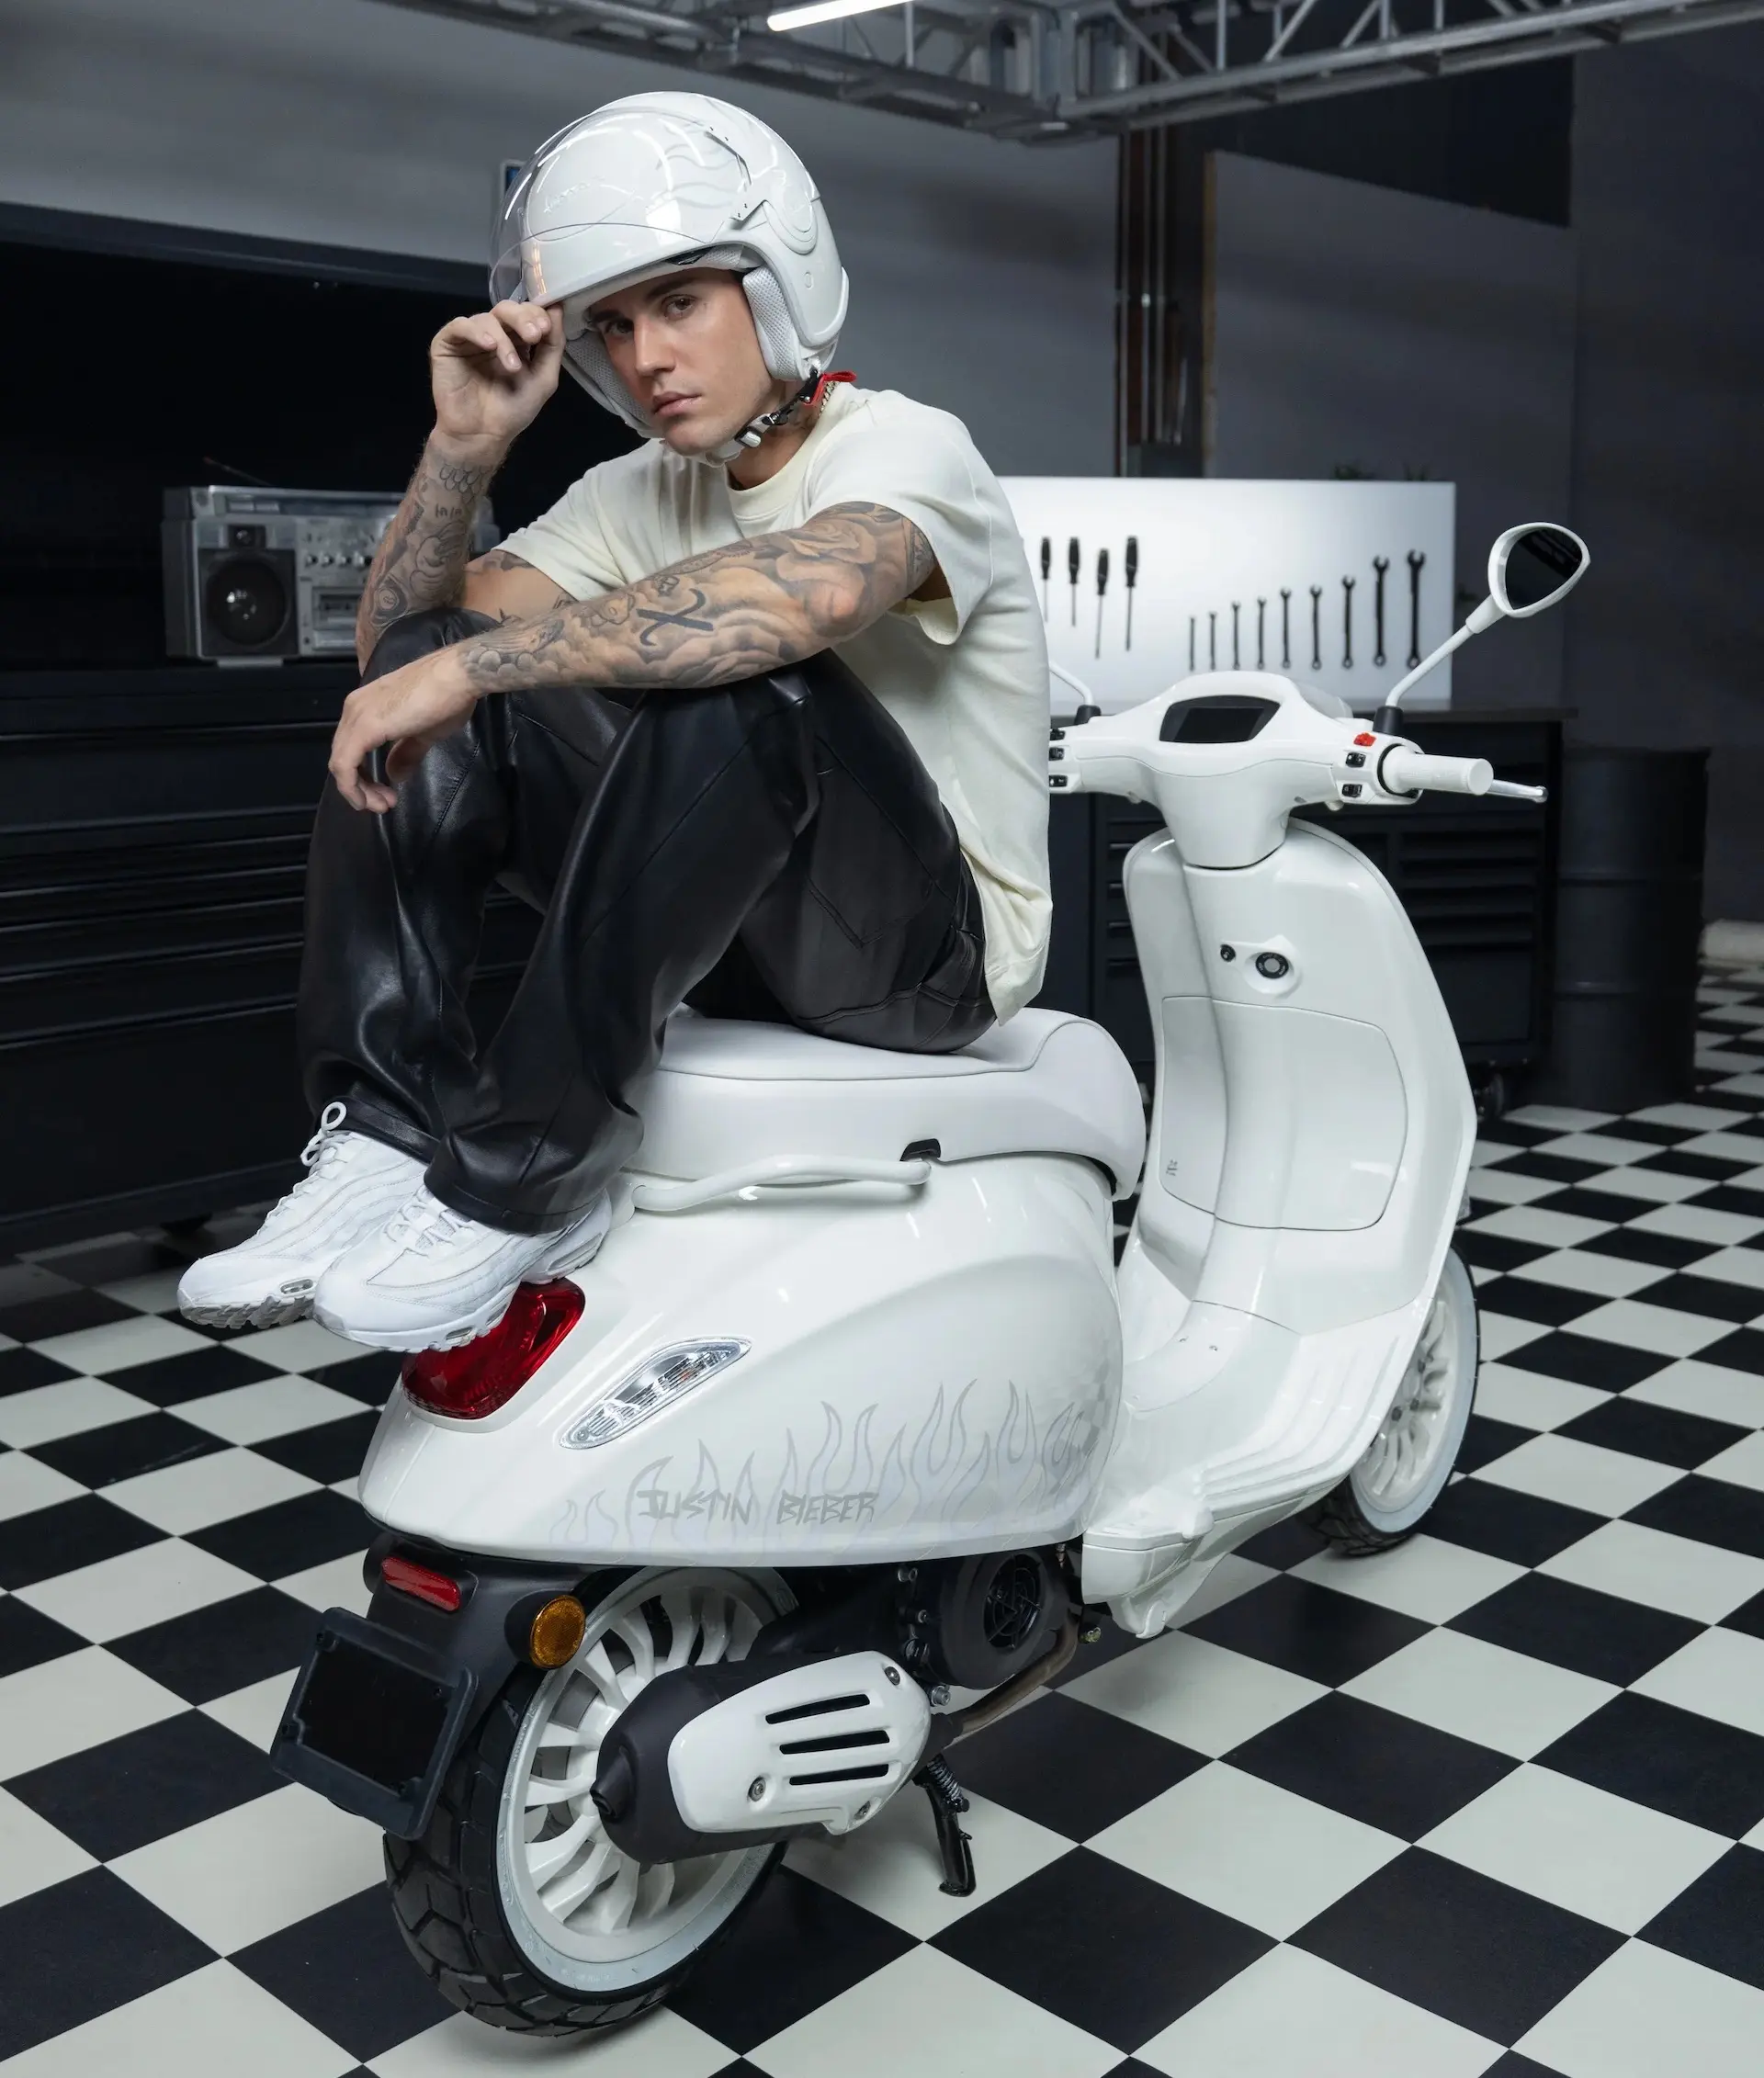 Así es la nueva motocicleta de Vespa diseñada por Justin Bieber: video